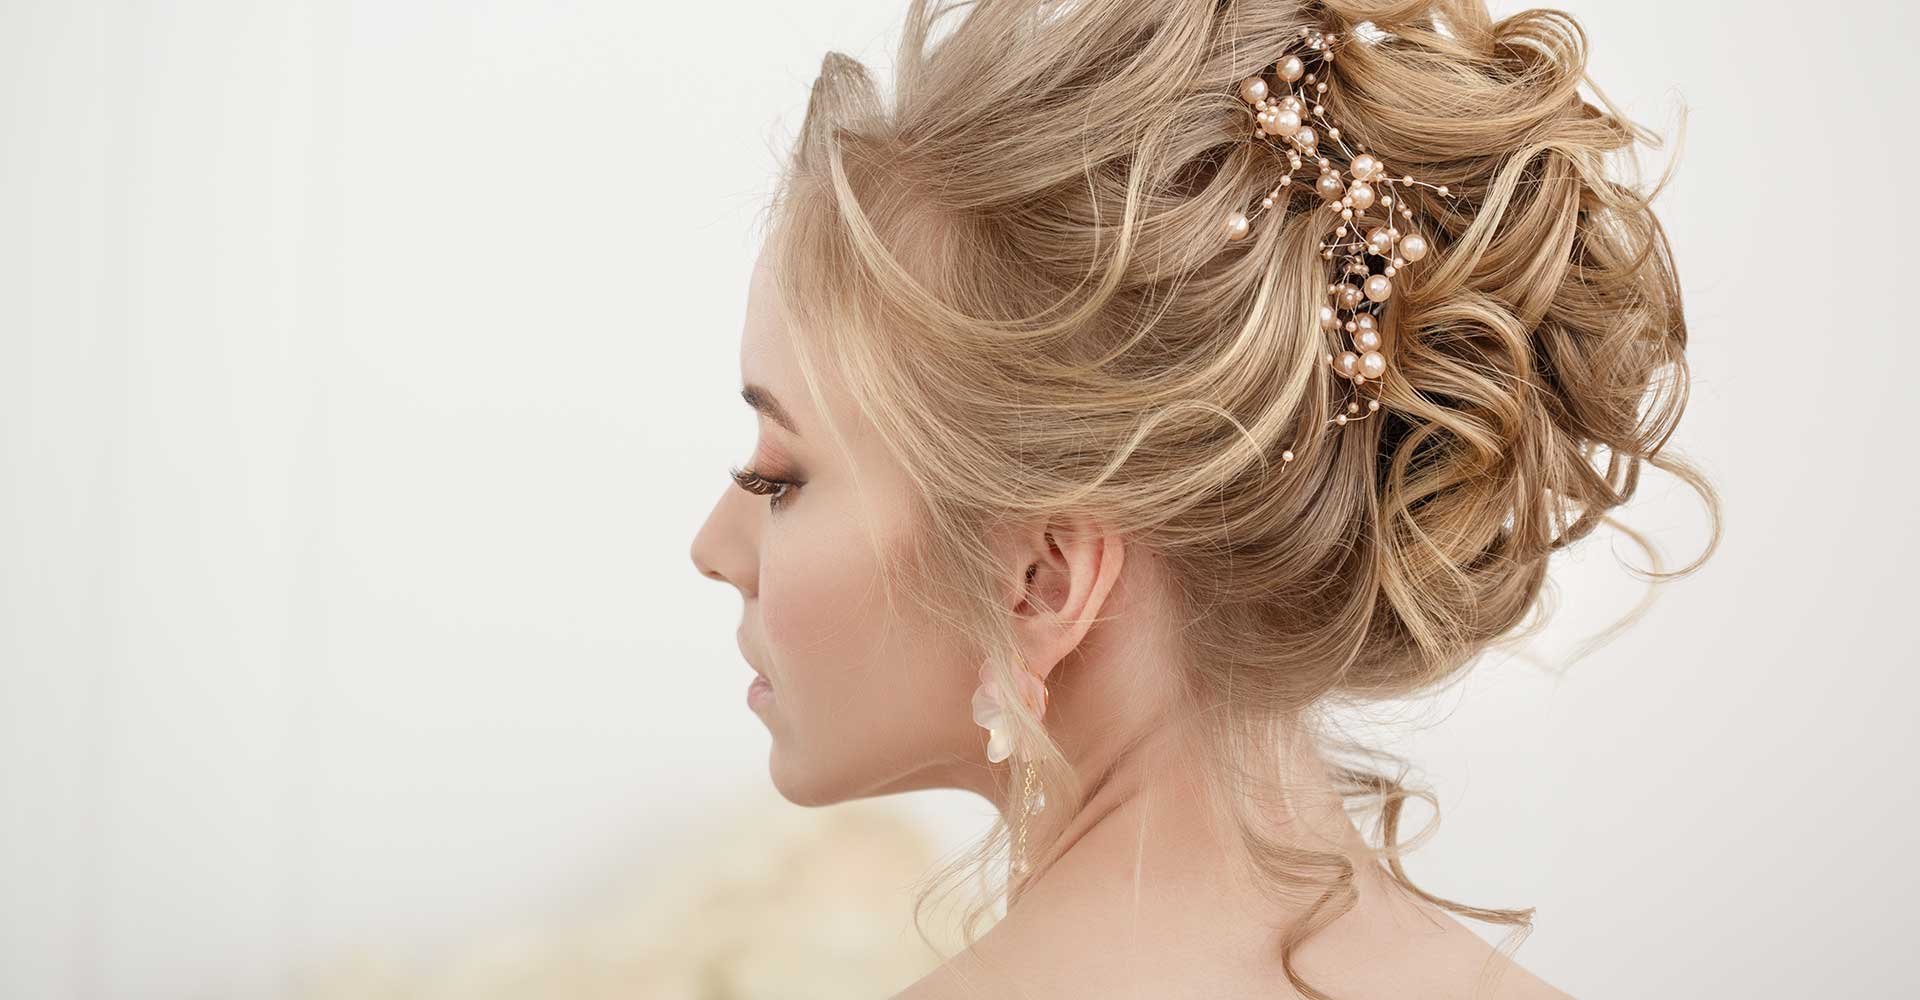 Penteado de noiva: 15 coques e dicas de como usar o look no casamento. |  L'Oréal Paris